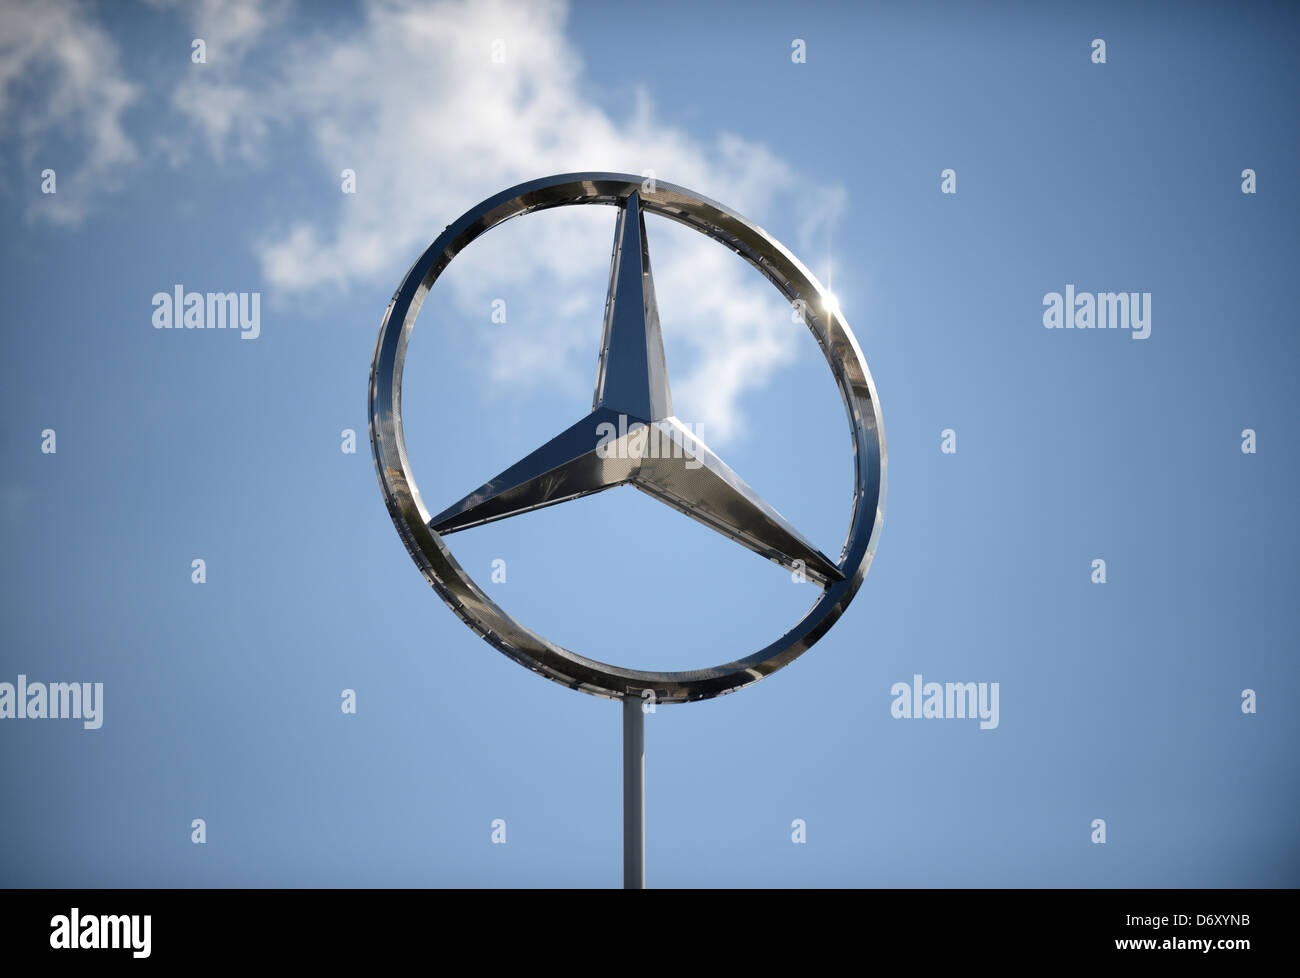 Mercedes benz group immagini e fotografie stock ad alta risoluzione - Alamy